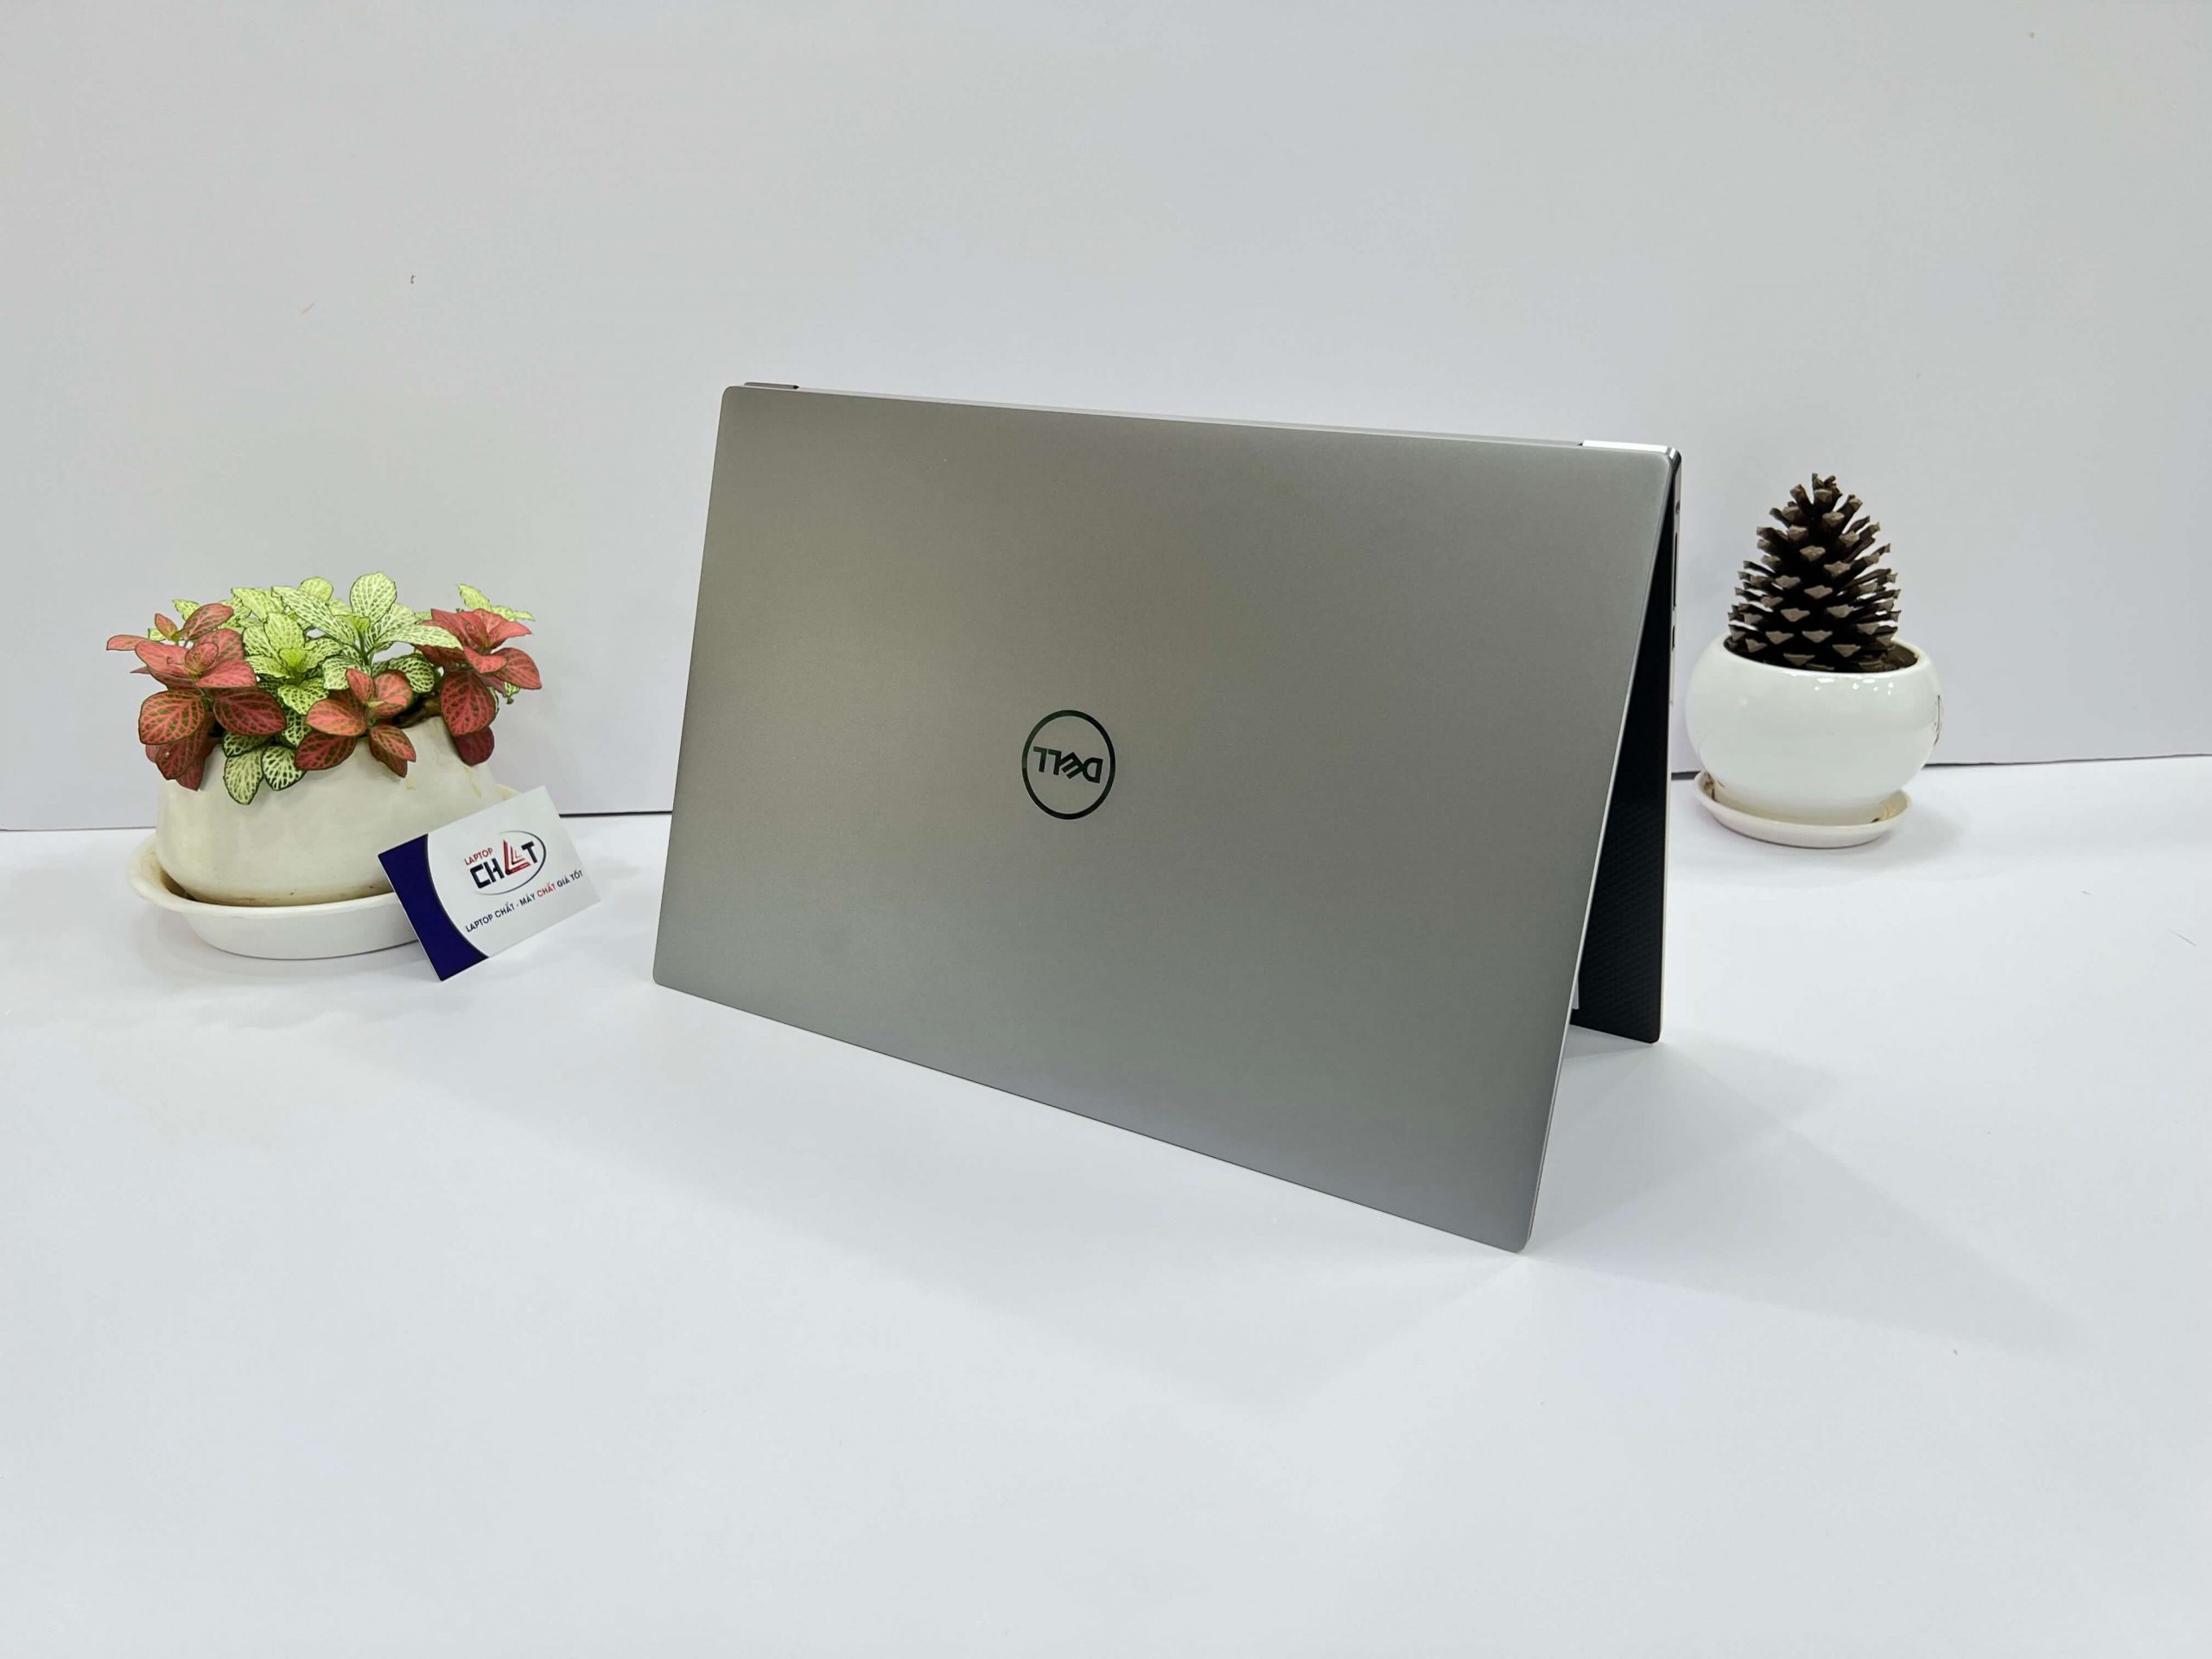 Dell Precision 5550 i7 - Laptop Chất